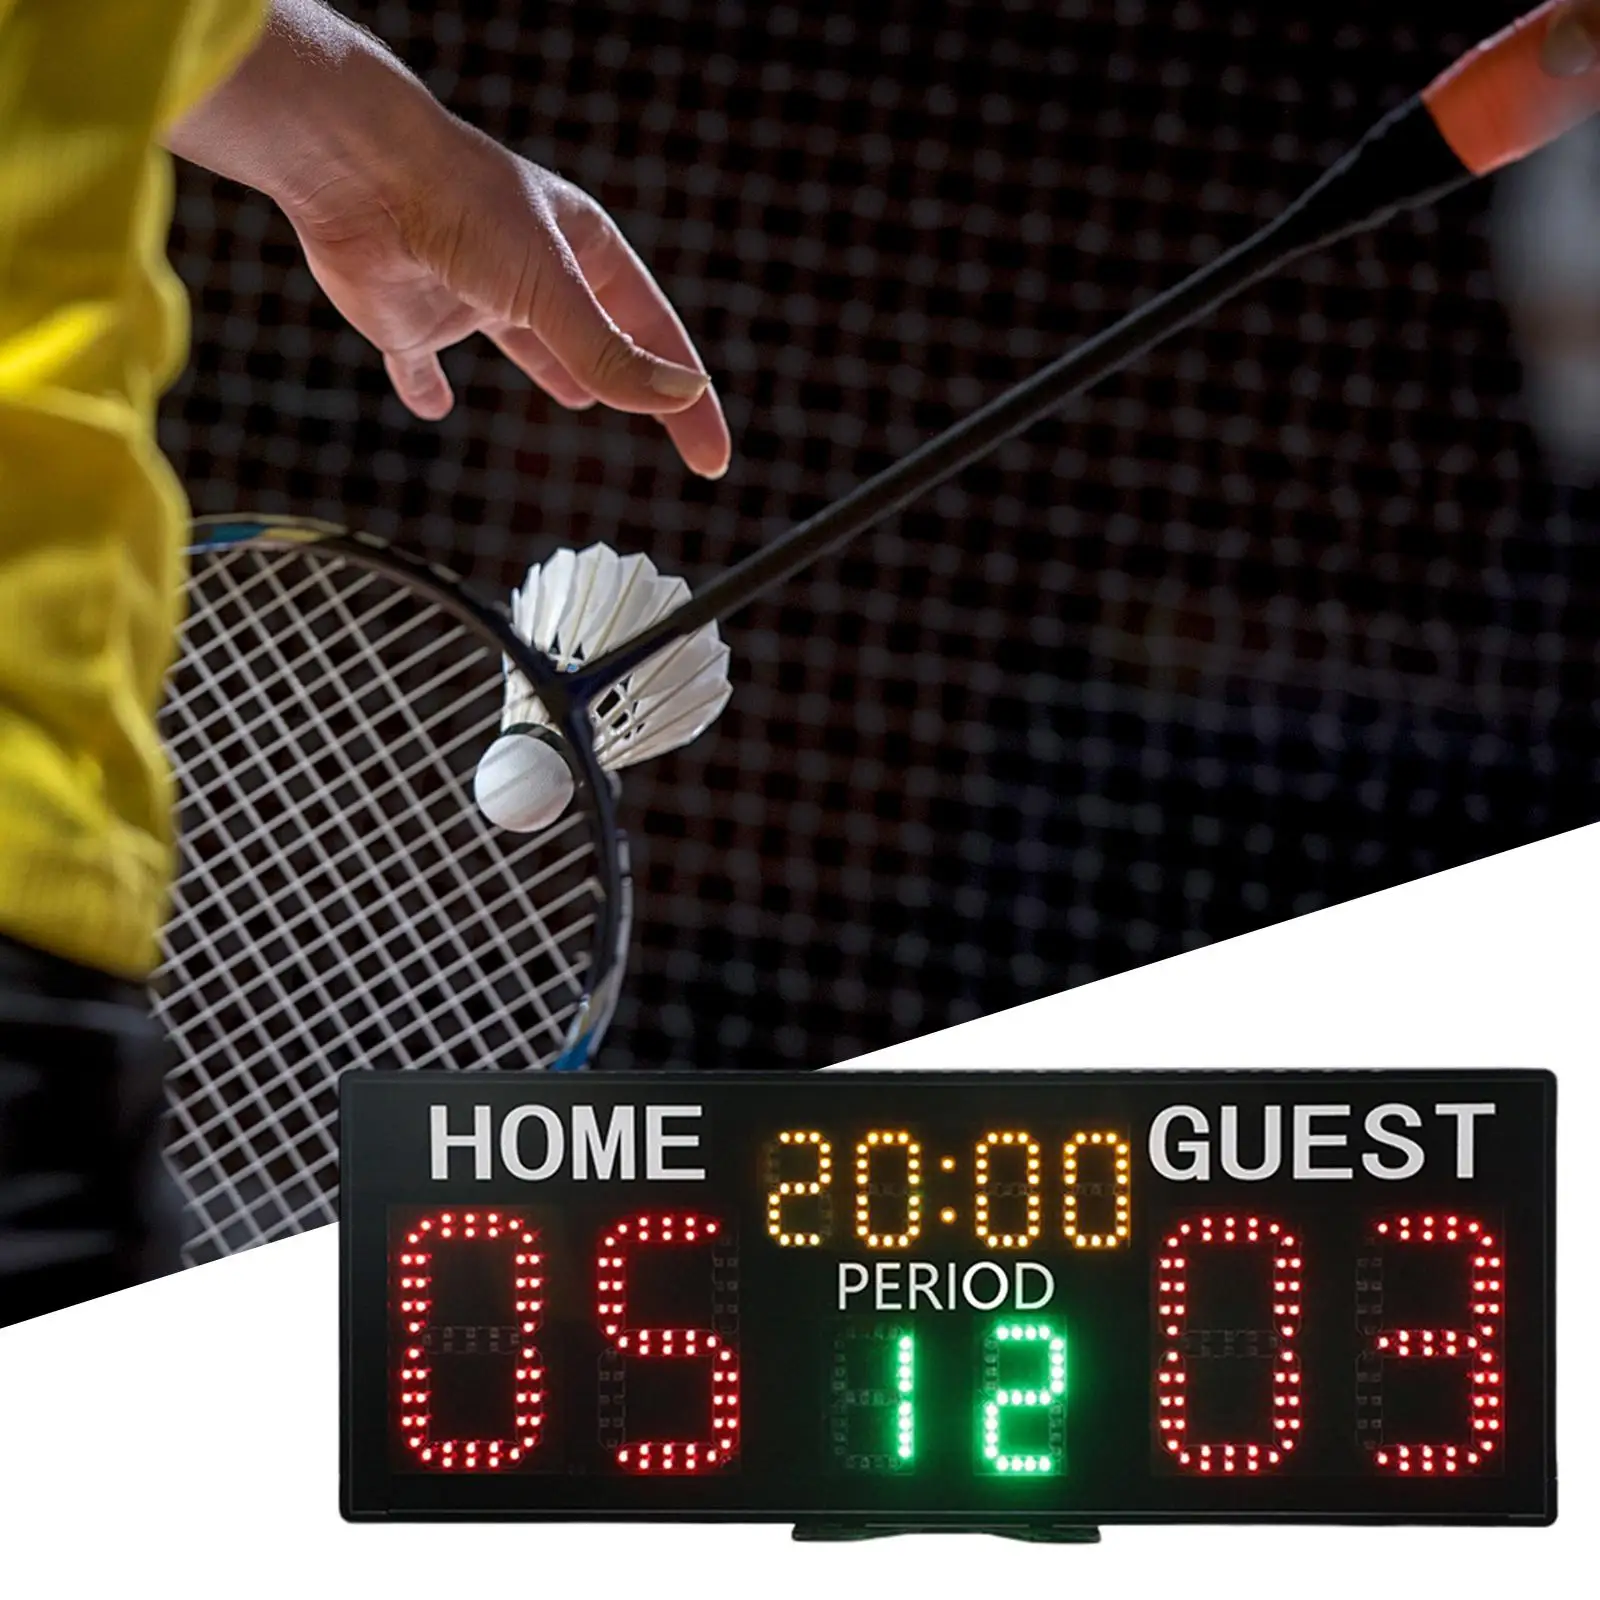 Tenisz kottakészítő Professzionális digitális eredménytábla Hordozható eredménymérő asztaliteniszhez Baseball Sport játékok Beltéri kültéri - 3